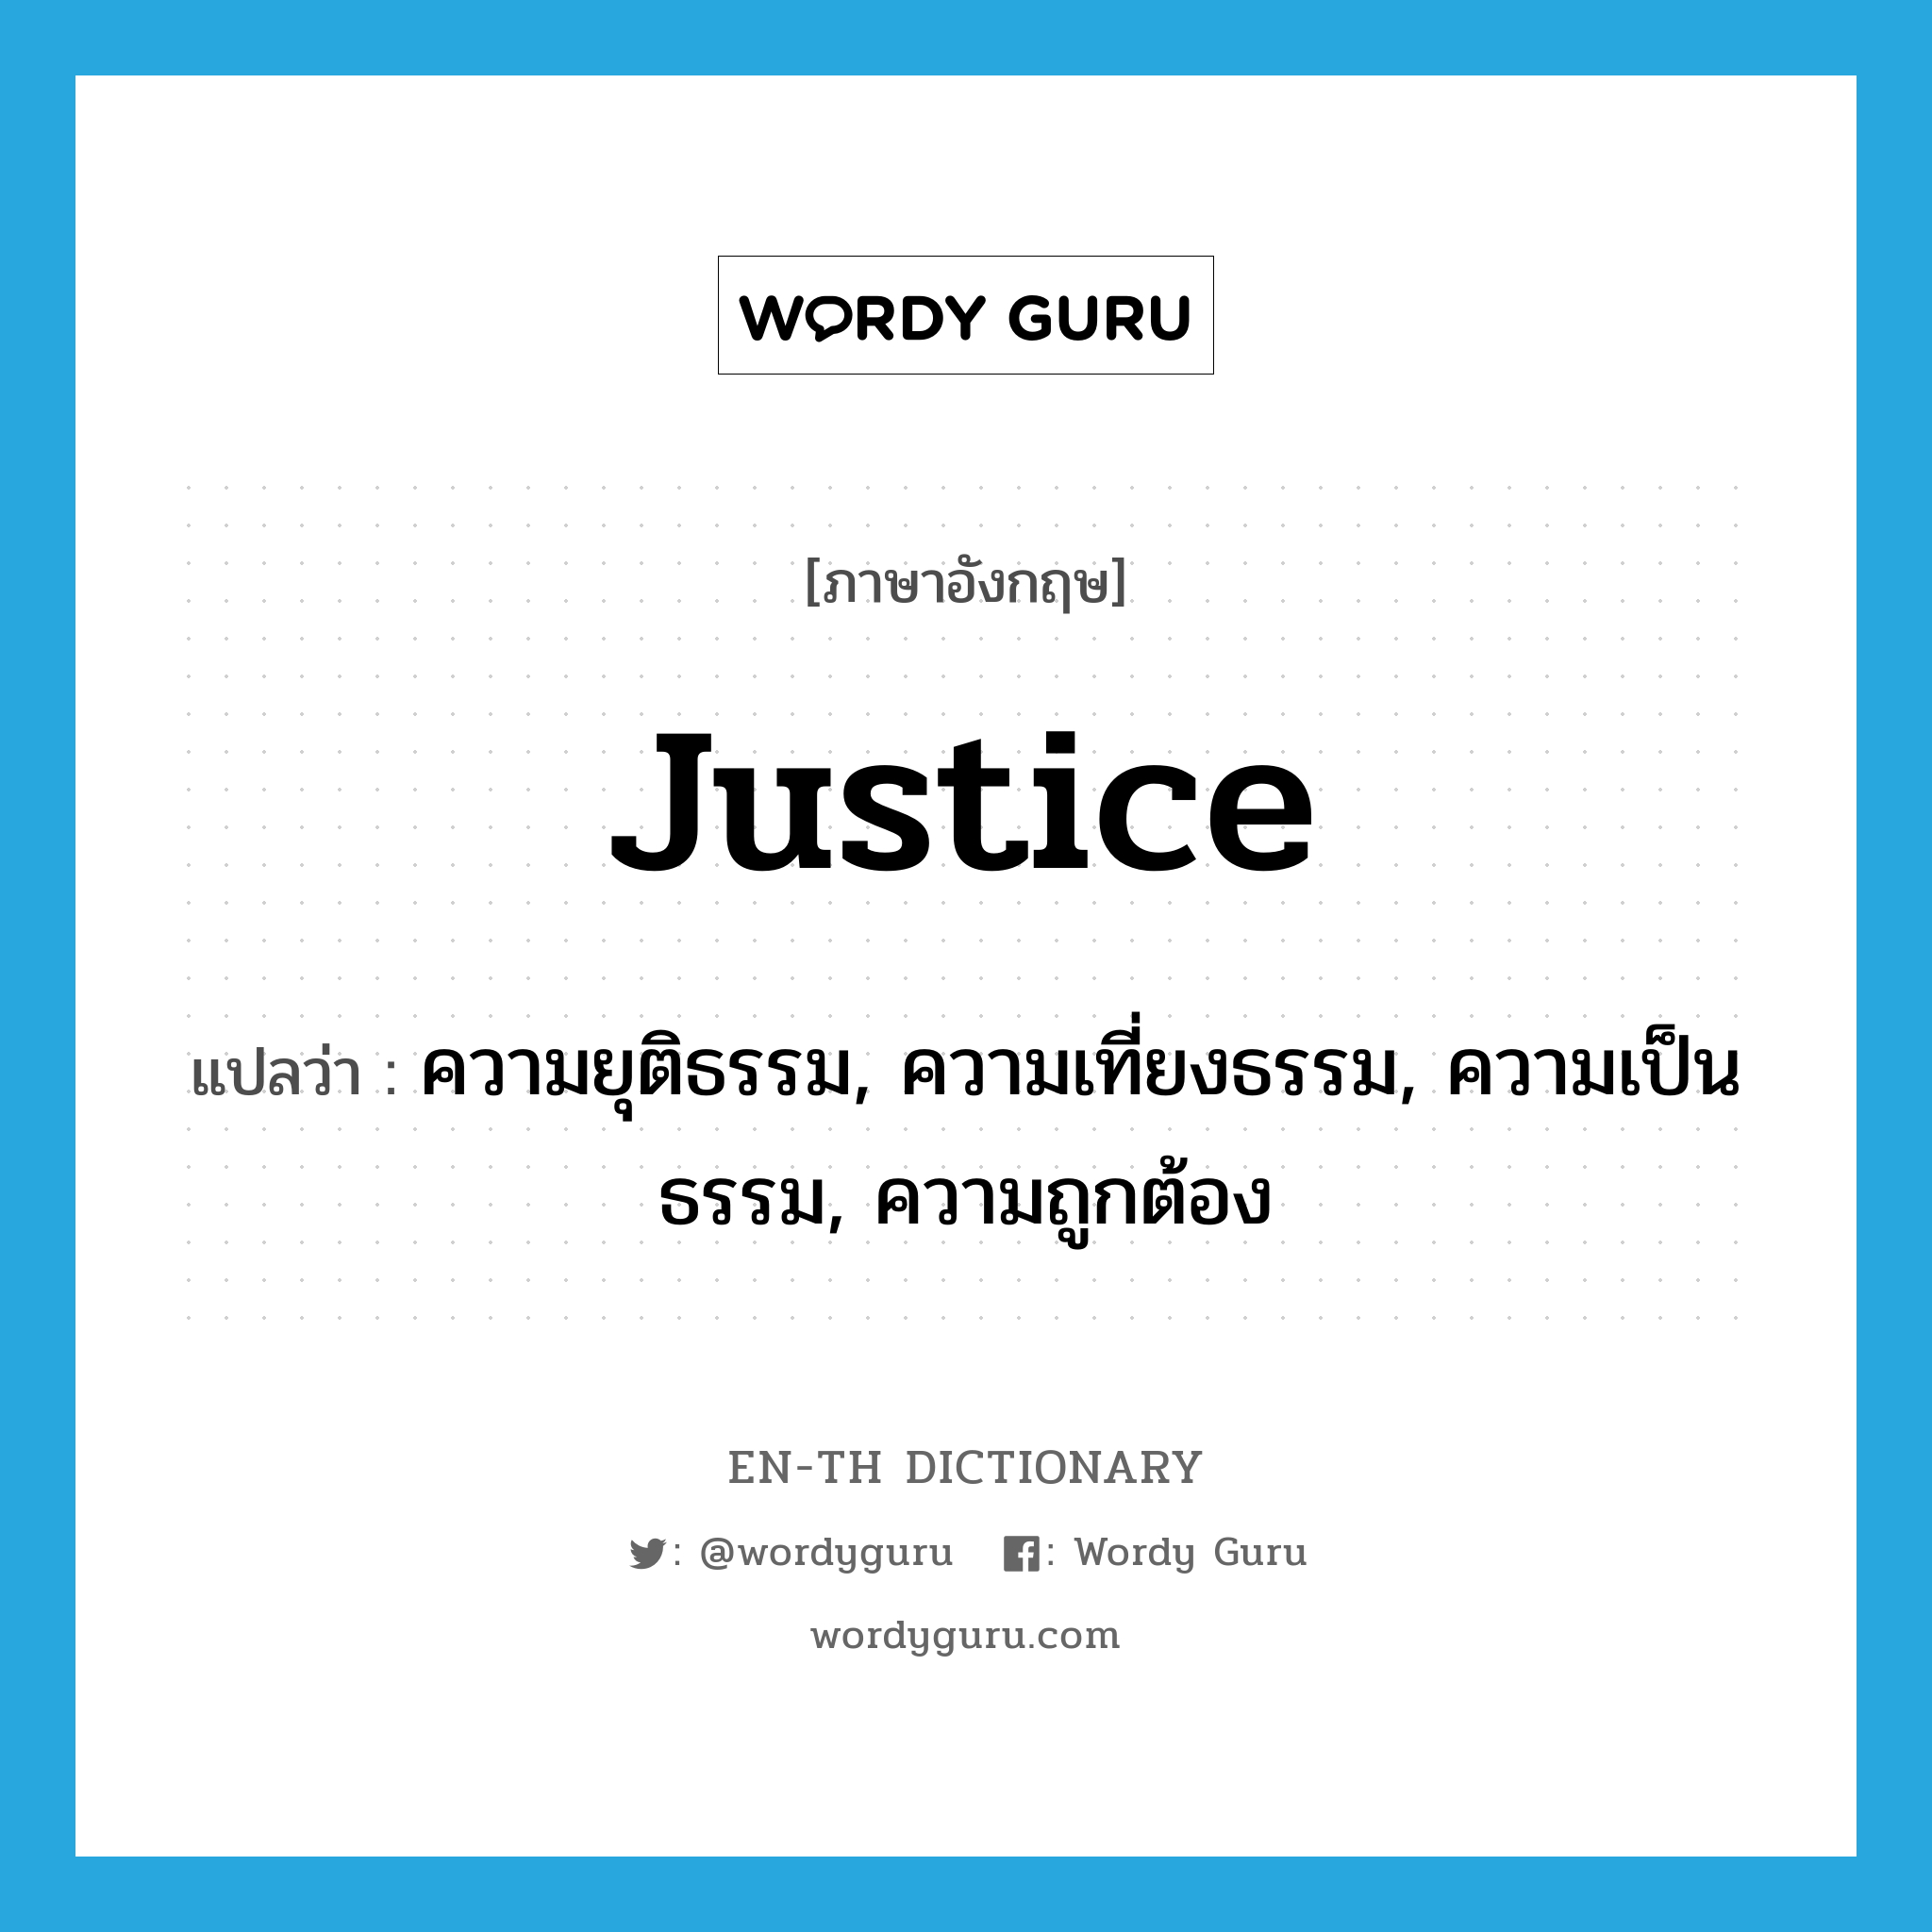 ความยุติธรรม, ความเที่ยงธรรม, ความเป็นธรรม, ความถูกต้อง ภาษาอังกฤษ?, คำศัพท์ภาษาอังกฤษ ความยุติธรรม, ความเที่ยงธรรม, ความเป็นธรรม, ความถูกต้อง แปลว่า justice ประเภท N หมวด N